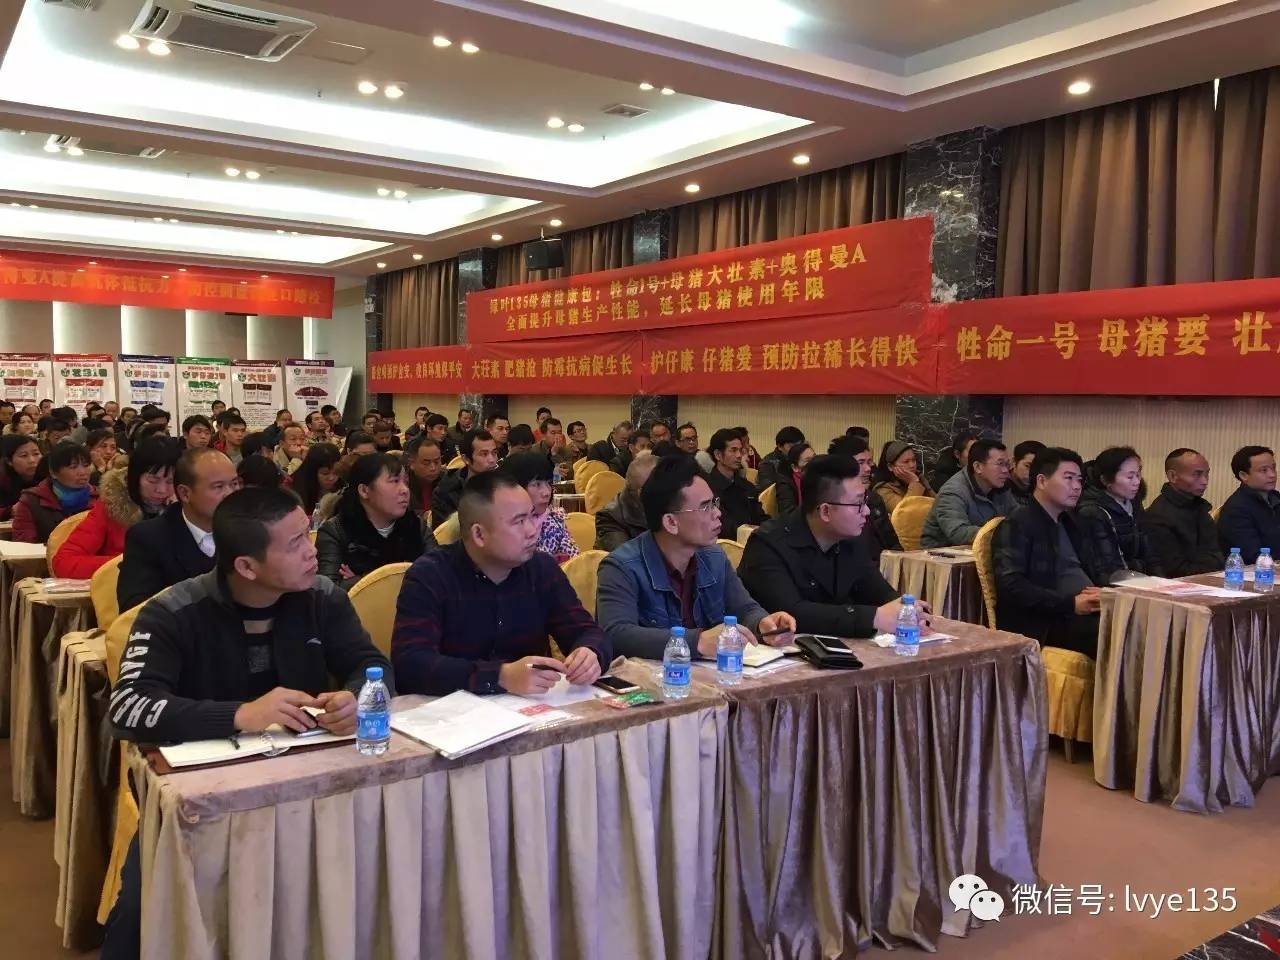 135高效保健养猪技术研讨会广西桂林站